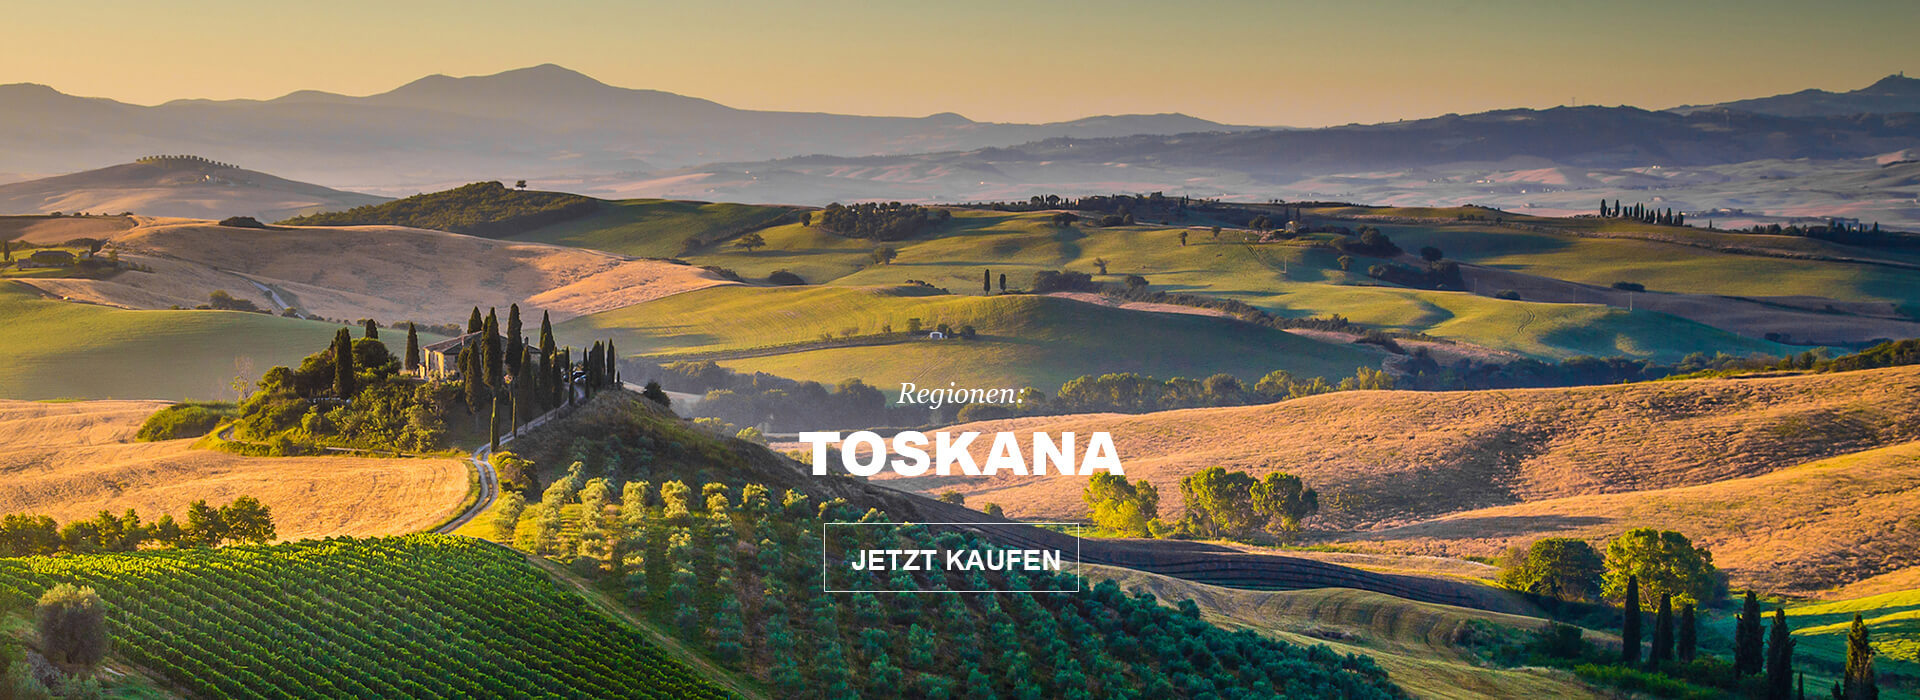 Regionen: Toskana